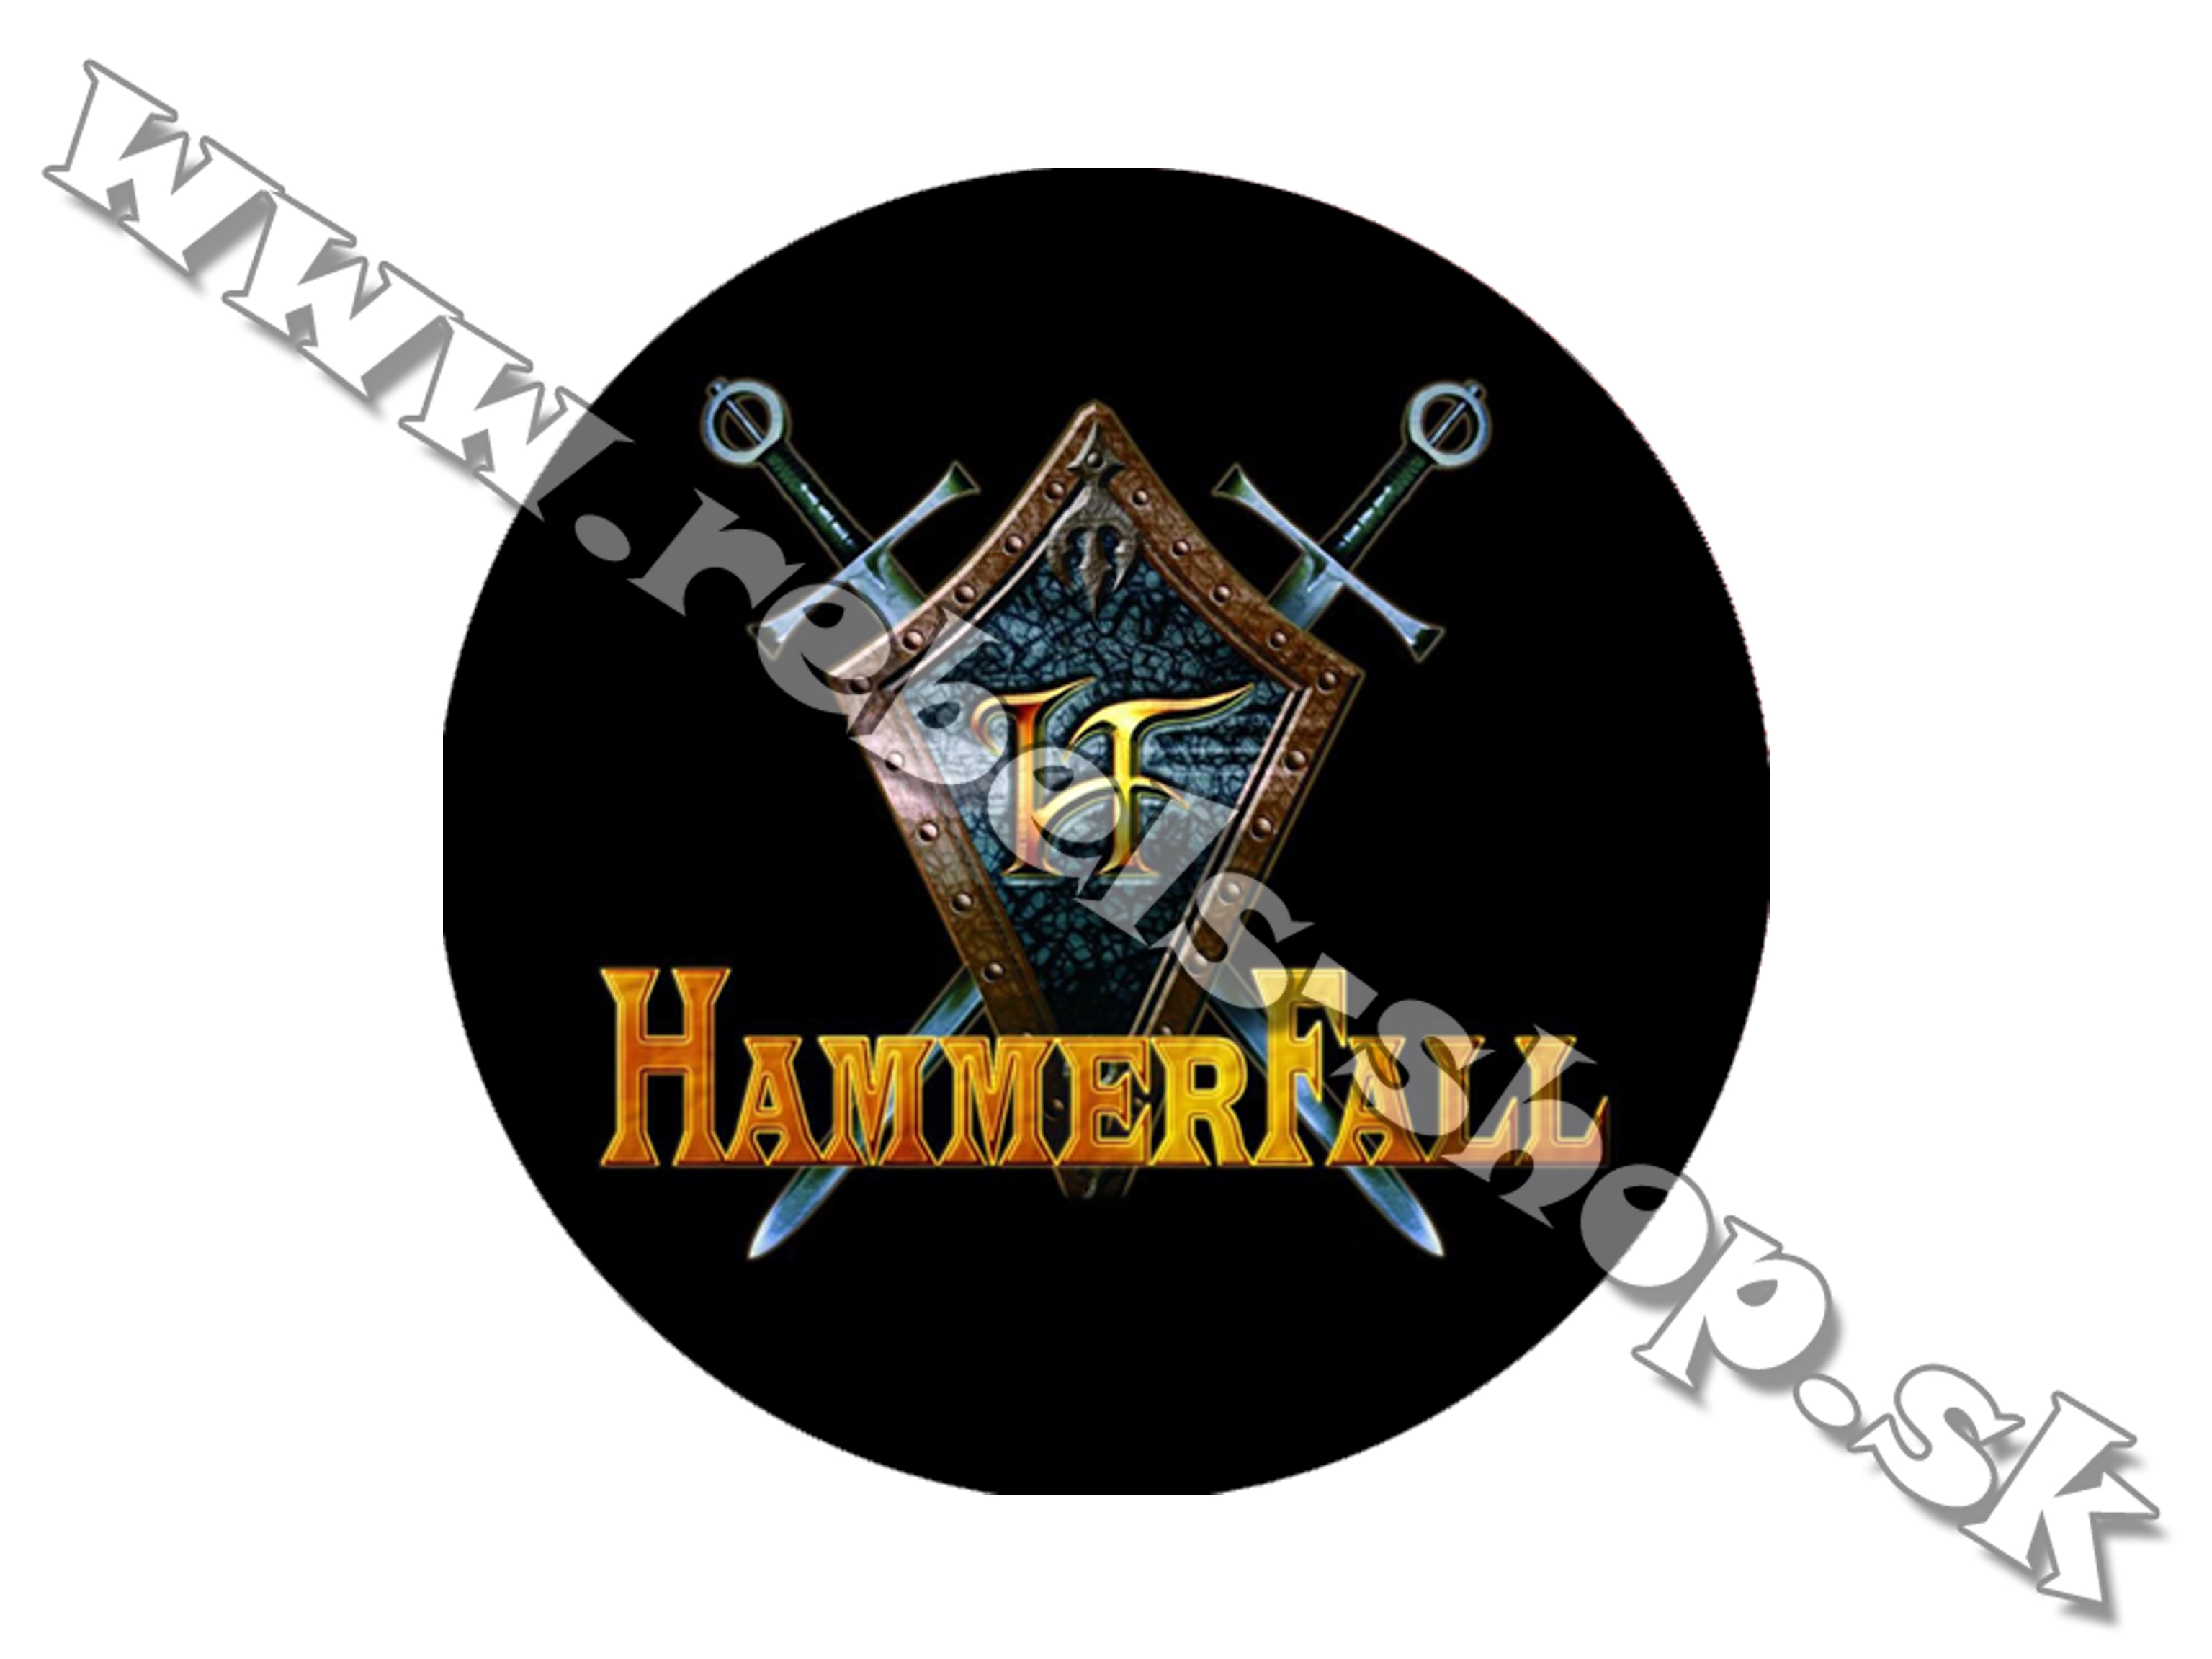 Odznak "Hammerfall"